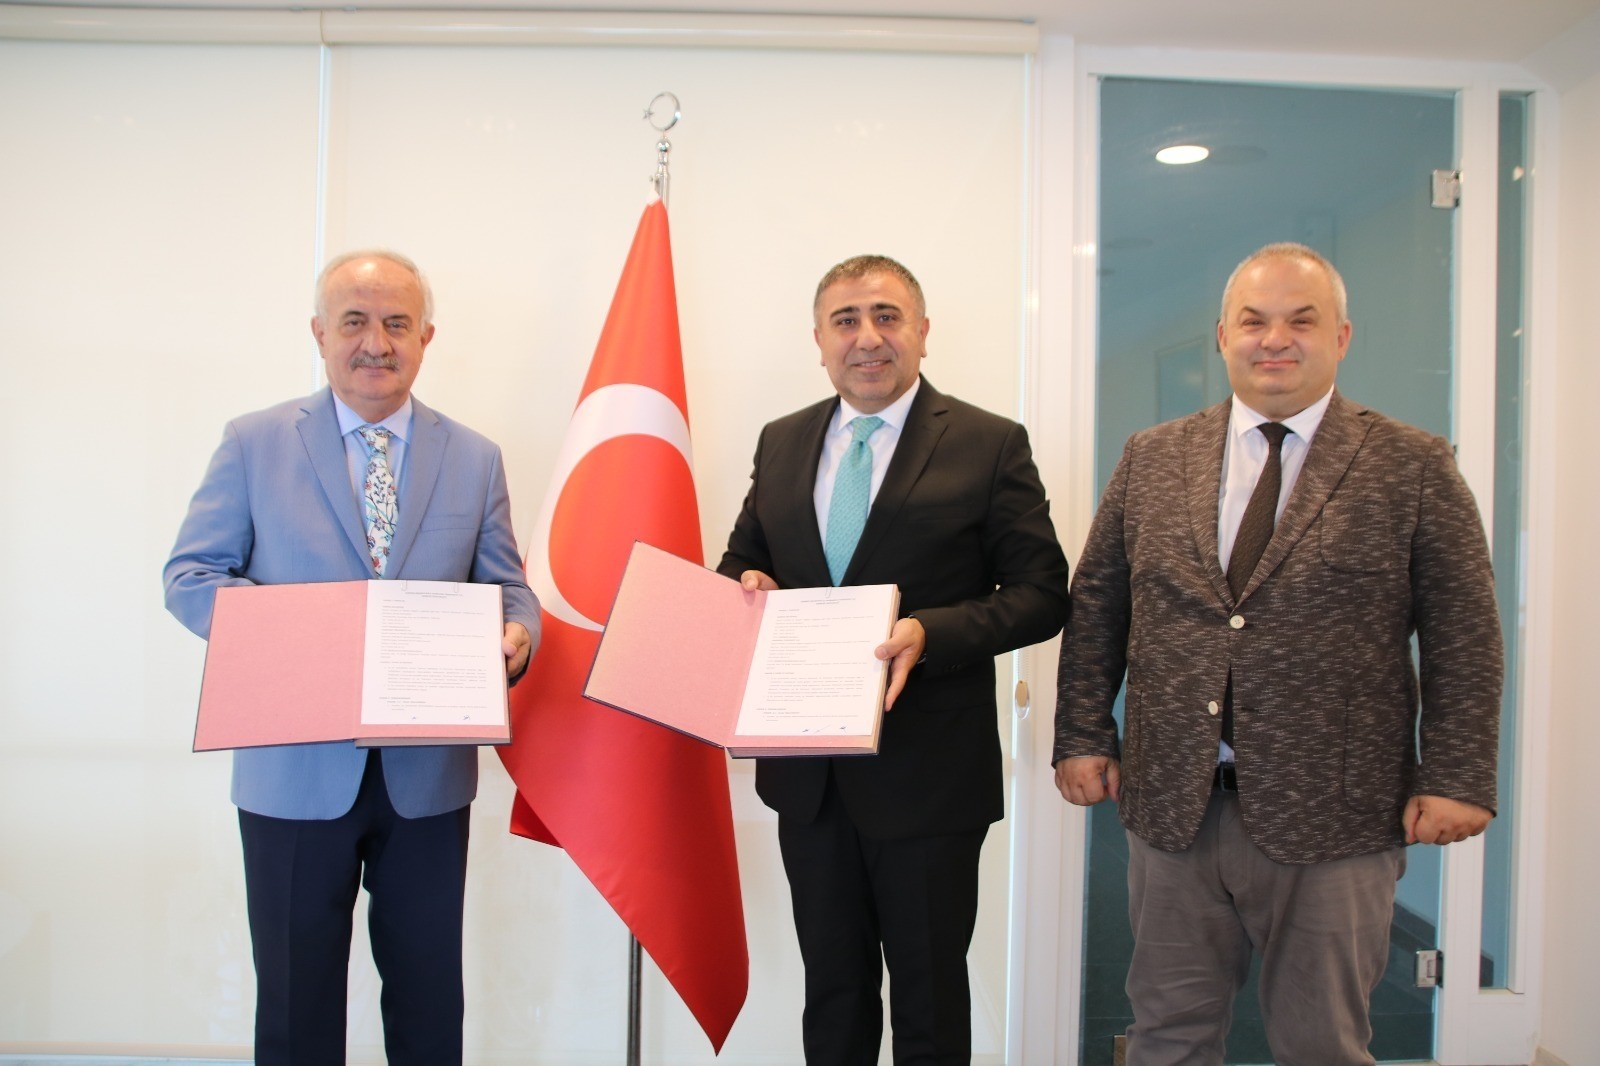 Derince Belediyesi, TÜBİTAK MARTEK ile protokol imzaladı #kocaeli